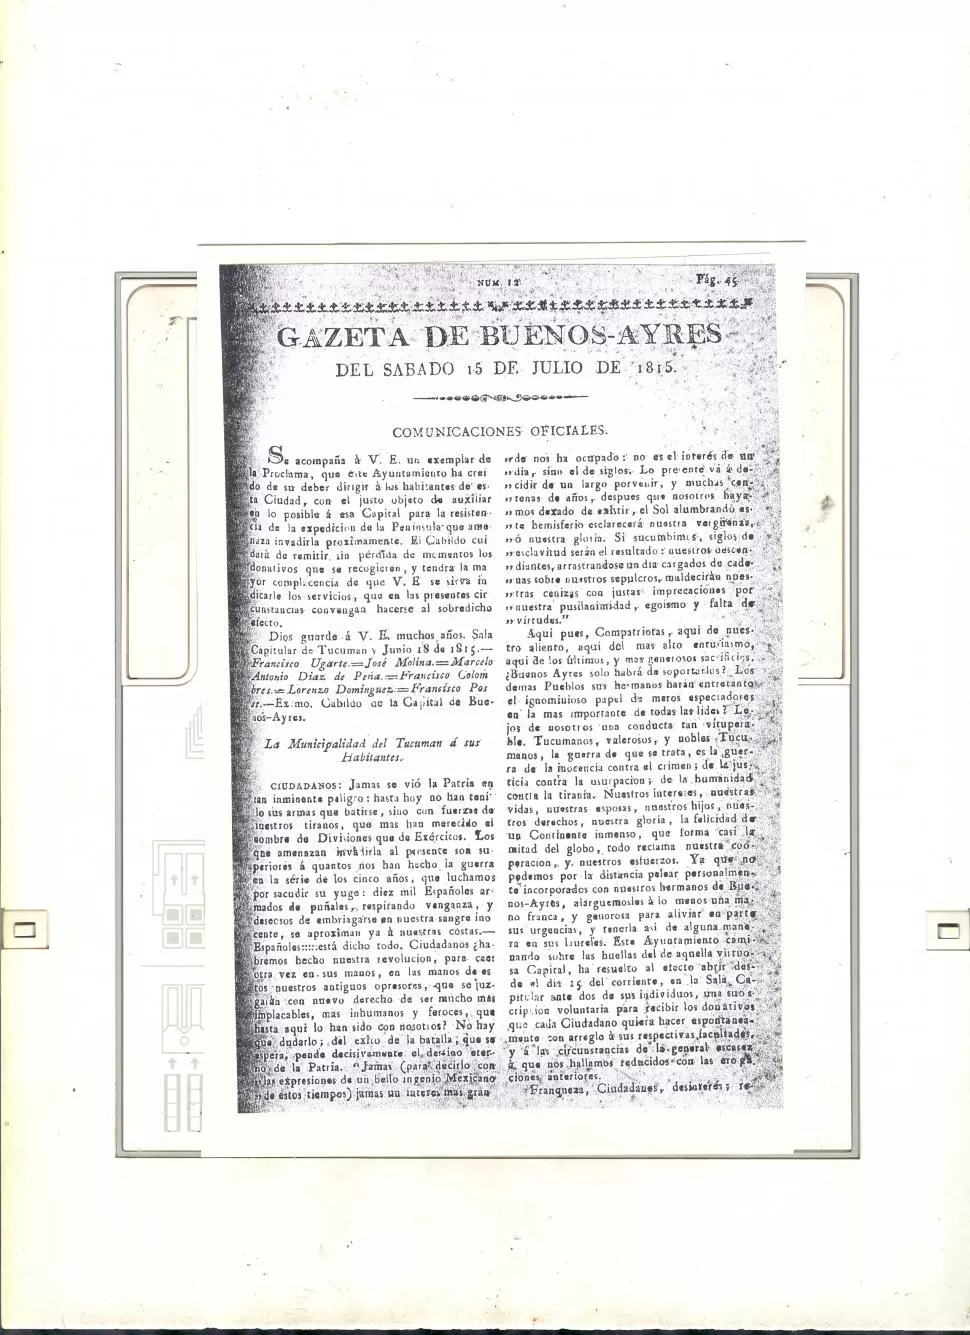 LA PROCLAMA TUCUMANA. Primera página de ”La Gazeta de Buenos Aires”, con la reproducción íntegra de lo resuelto por el Cabildo tucumano. la gaceta / archivo